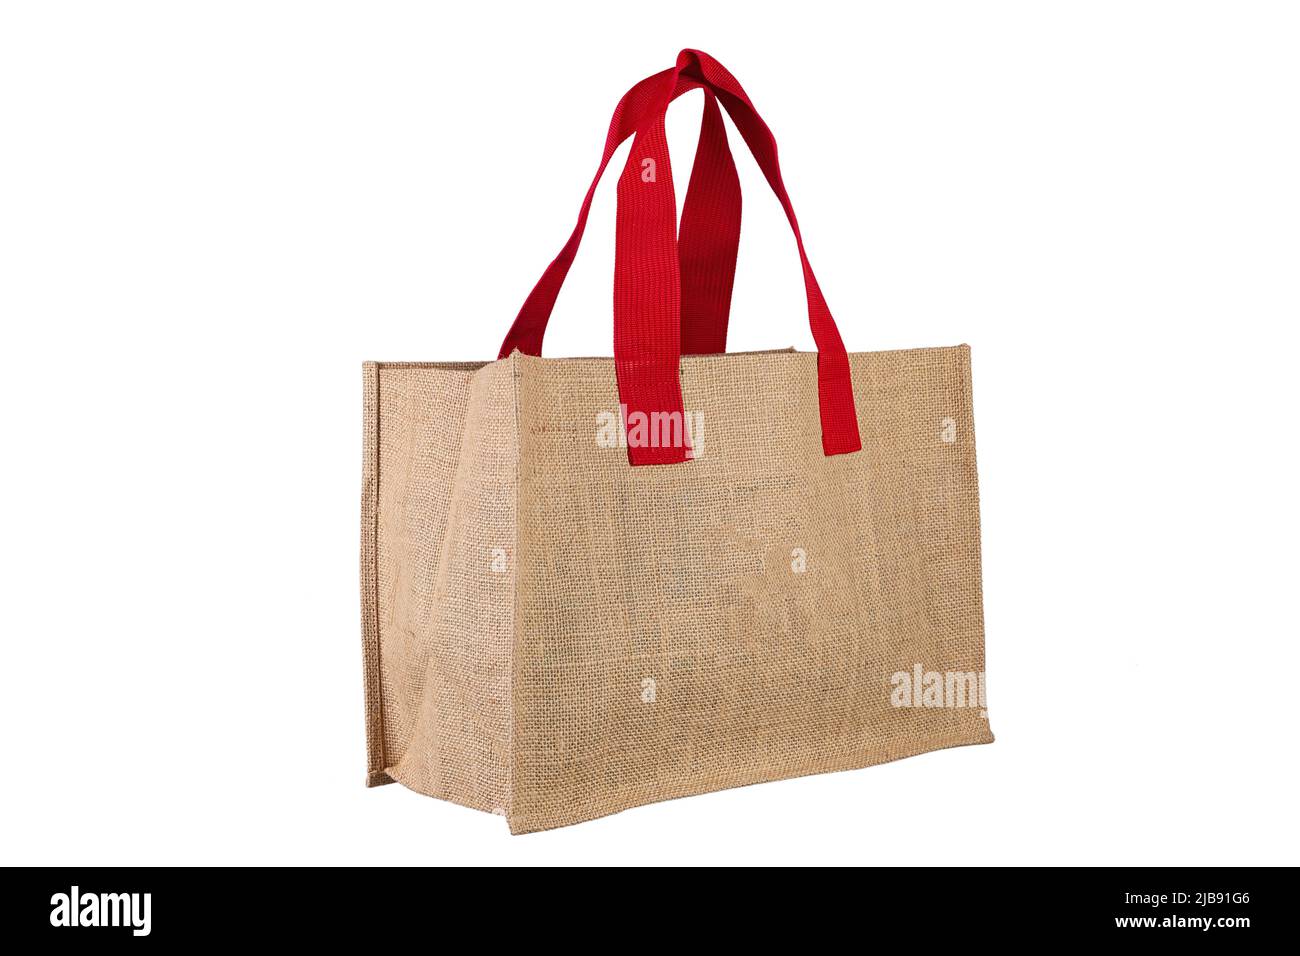 Einkaufstasche auf isoliertem weißem Hintergrund. Sacktuch-Textur. Datei enthält Beschneidungspfad. Stockfoto